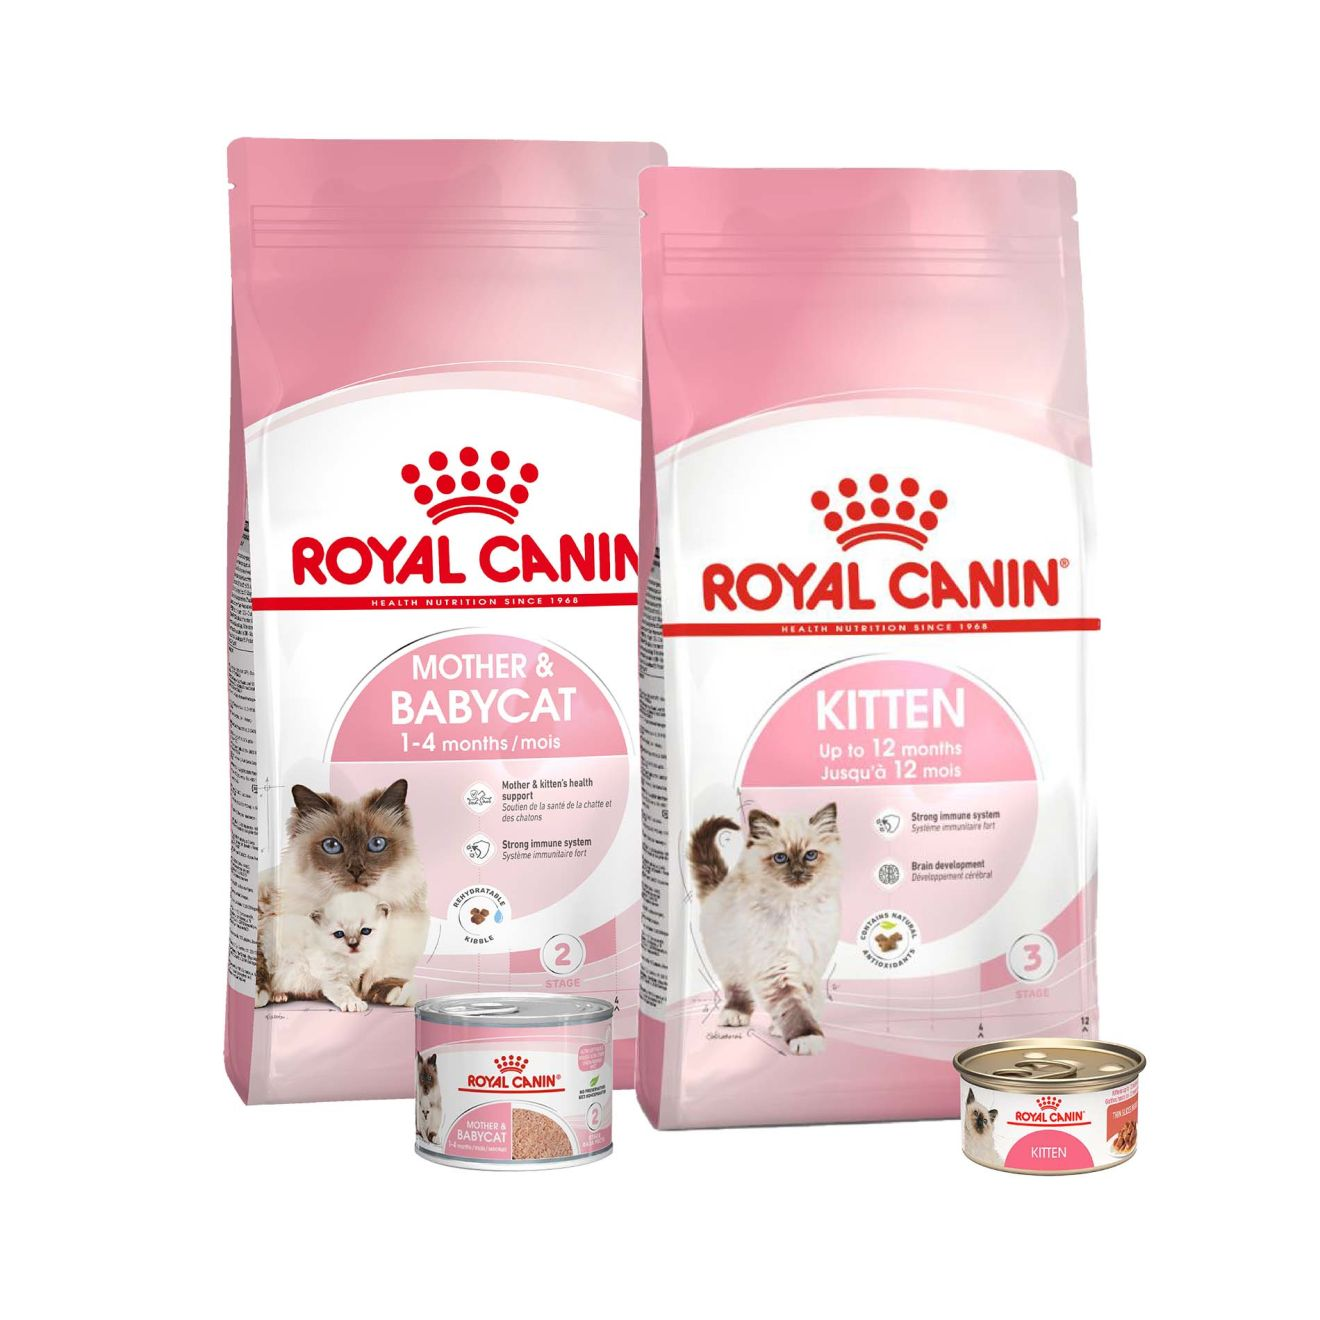 Royal Canin alimento para gatitos